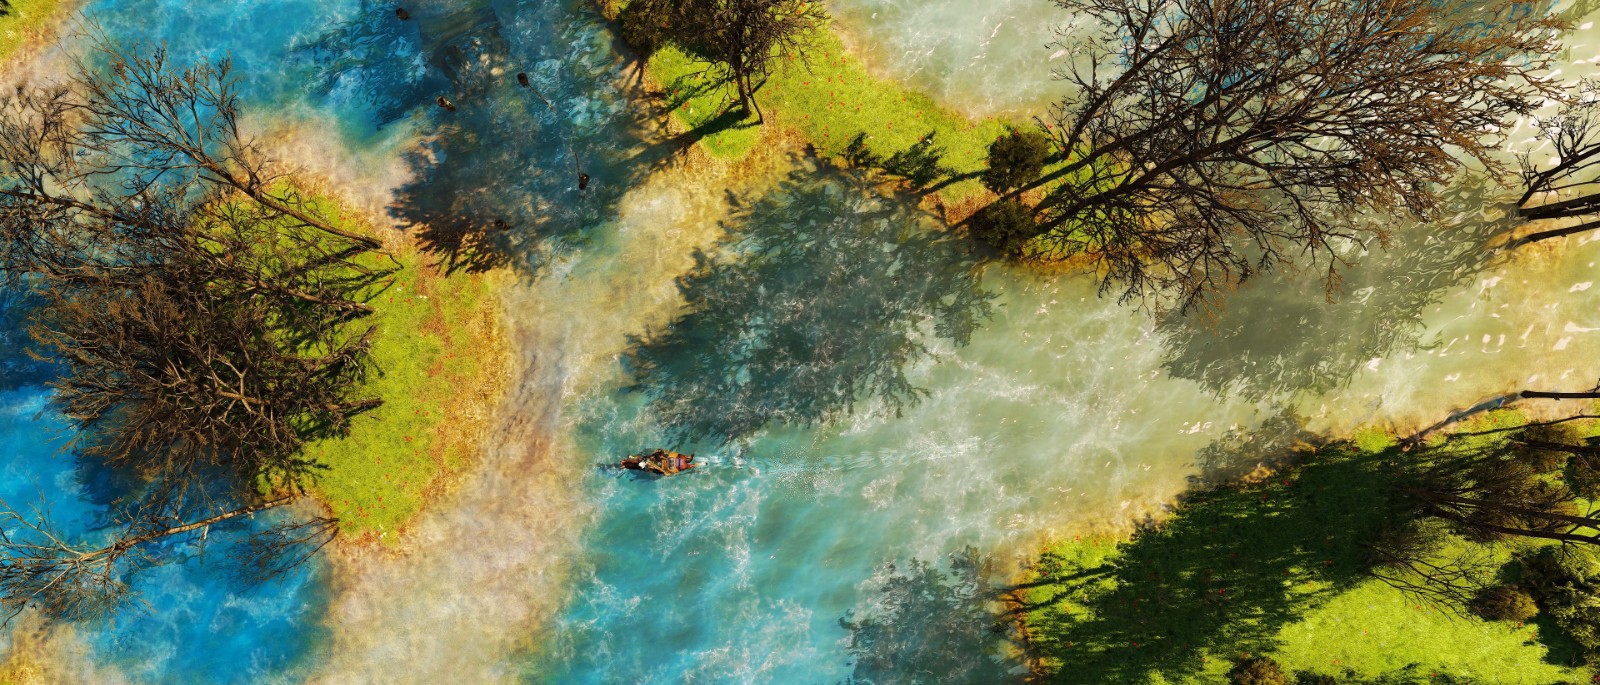 《巫師3：狂獵》次世代拍照模式美圖賞 風景太美麗